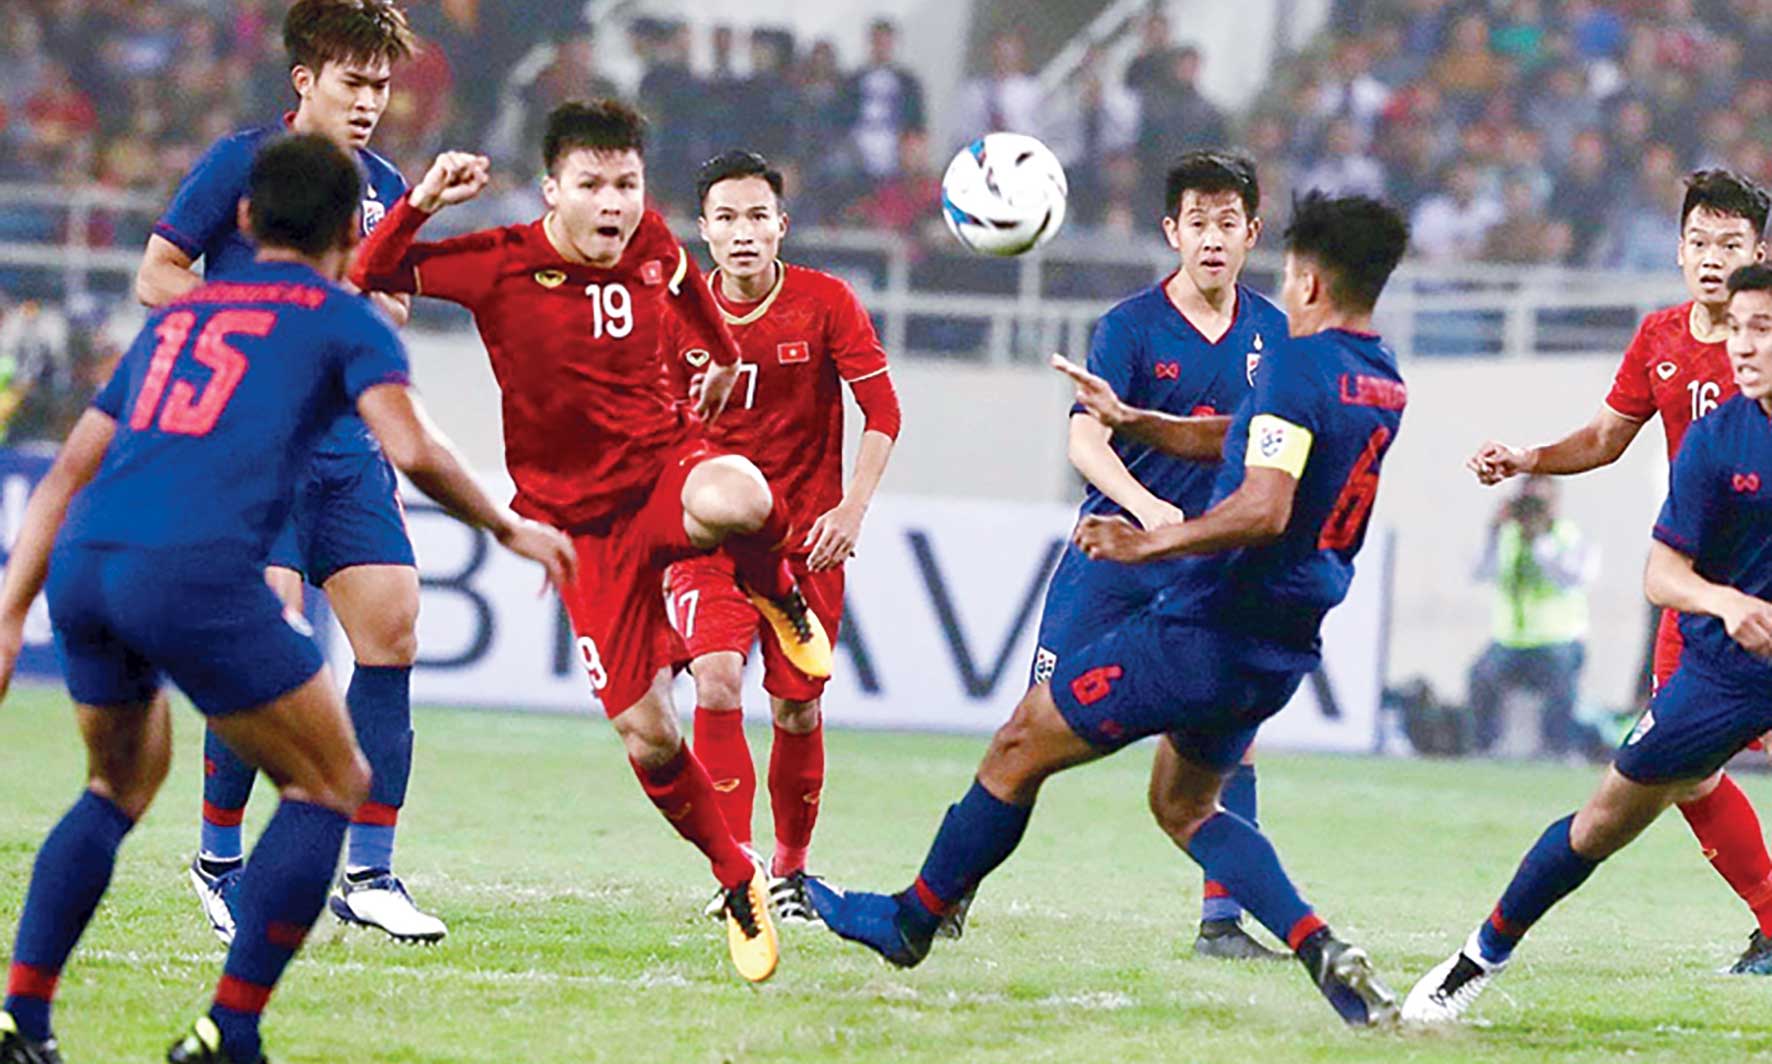 Lối chơi của Đội tuyển Thái Lan (áo xanh) dưới thời HLV Akira Nishino  là “ẩn số” đối với Đội tuyển Việt Nam.                                         Ảnh: Vietnamnet.vn